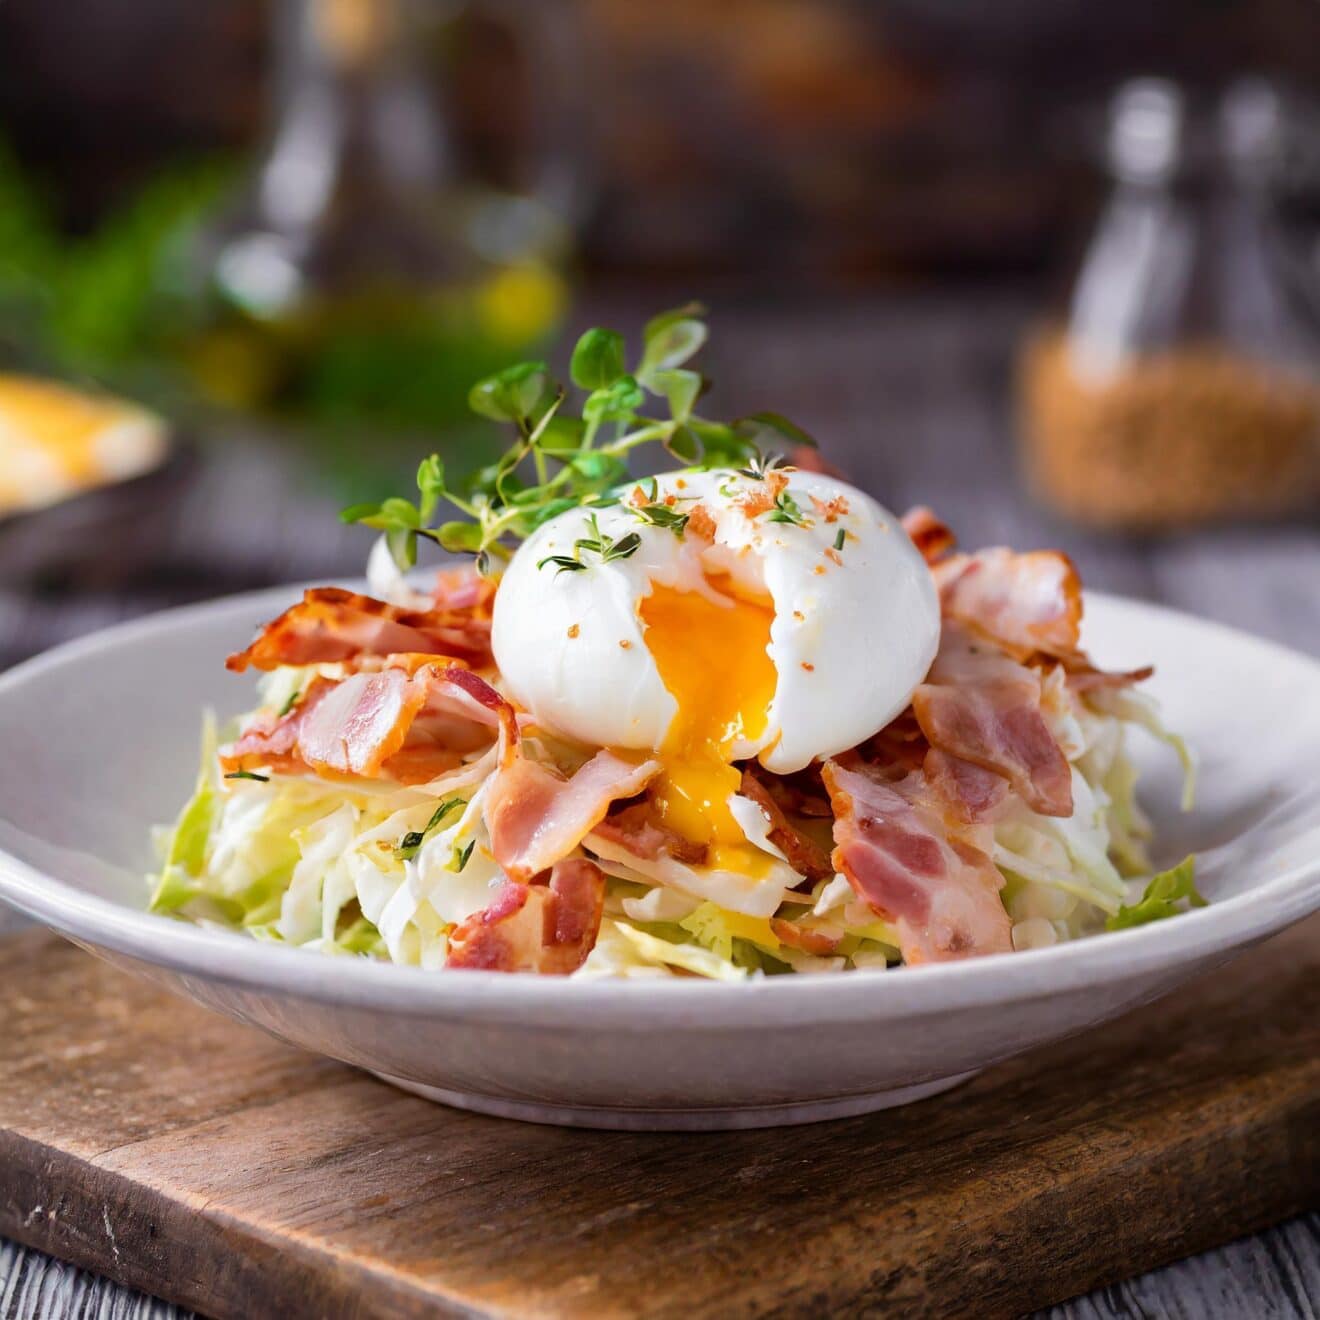 Découvrez la délicieuse salade lyonnaise : frisée, lardons et œuf poché